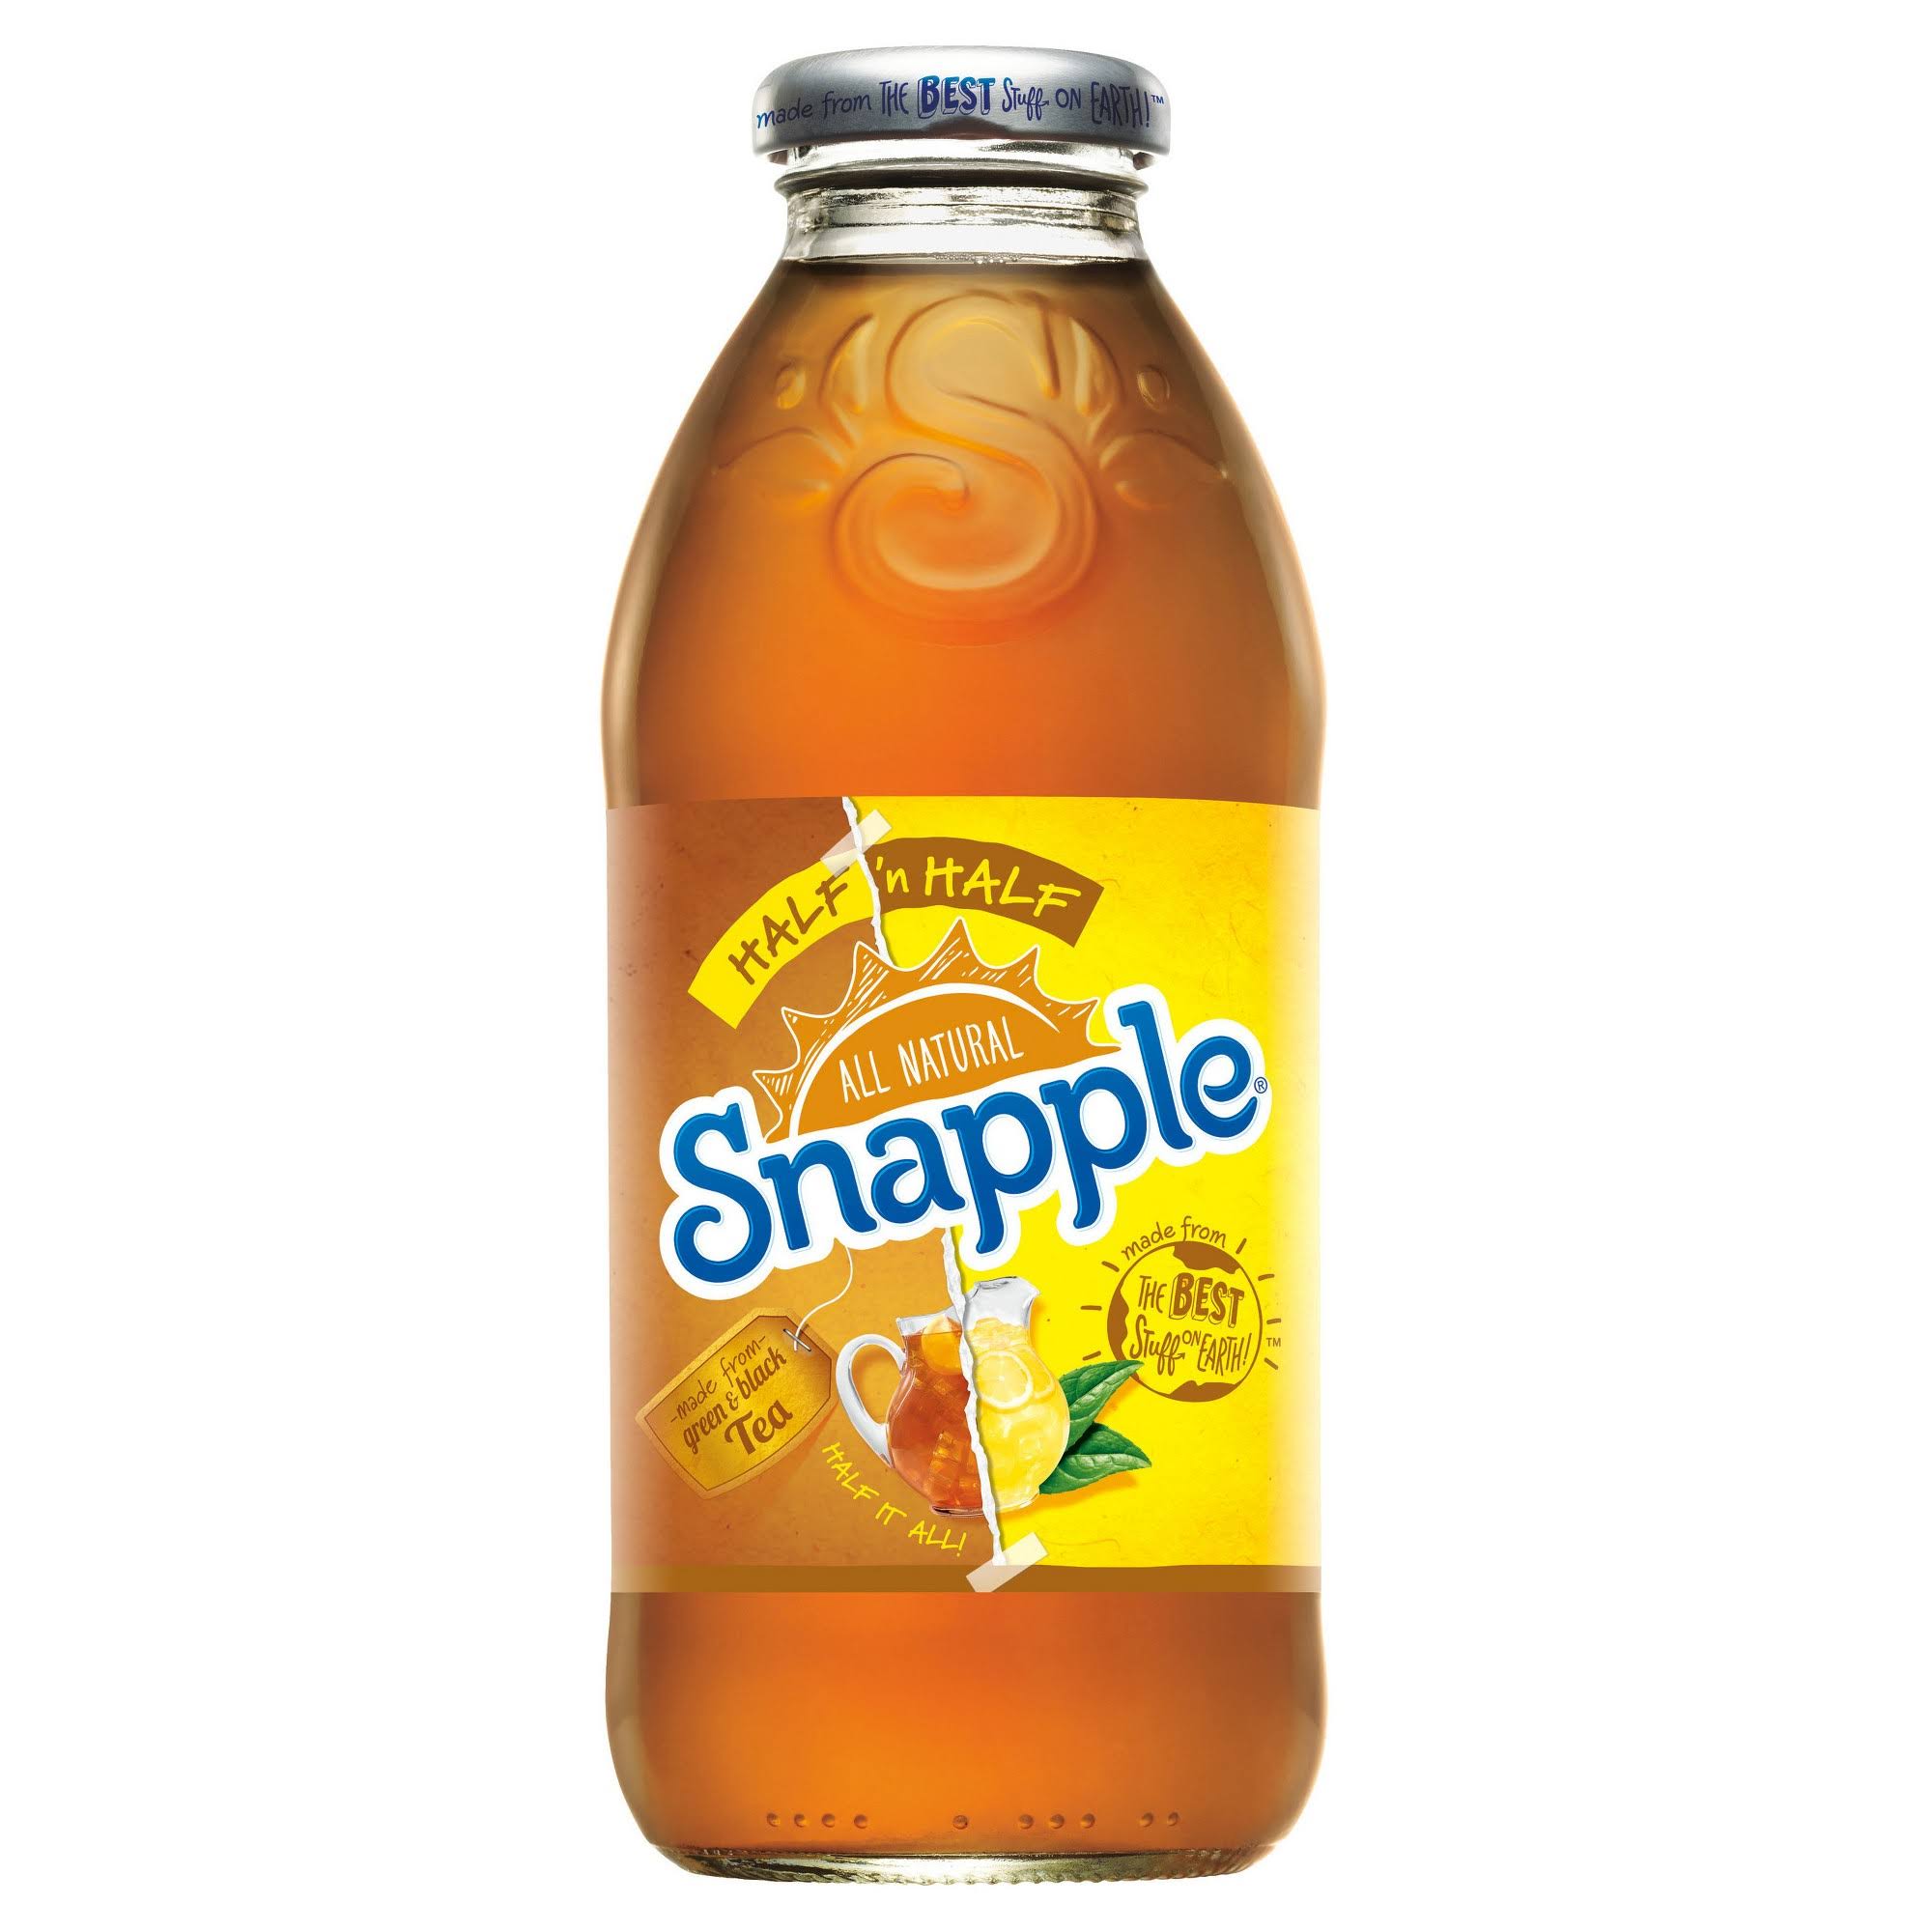 Snapple Half 'N Half Iced Tea, Lemonade - 16 fl oz bottle